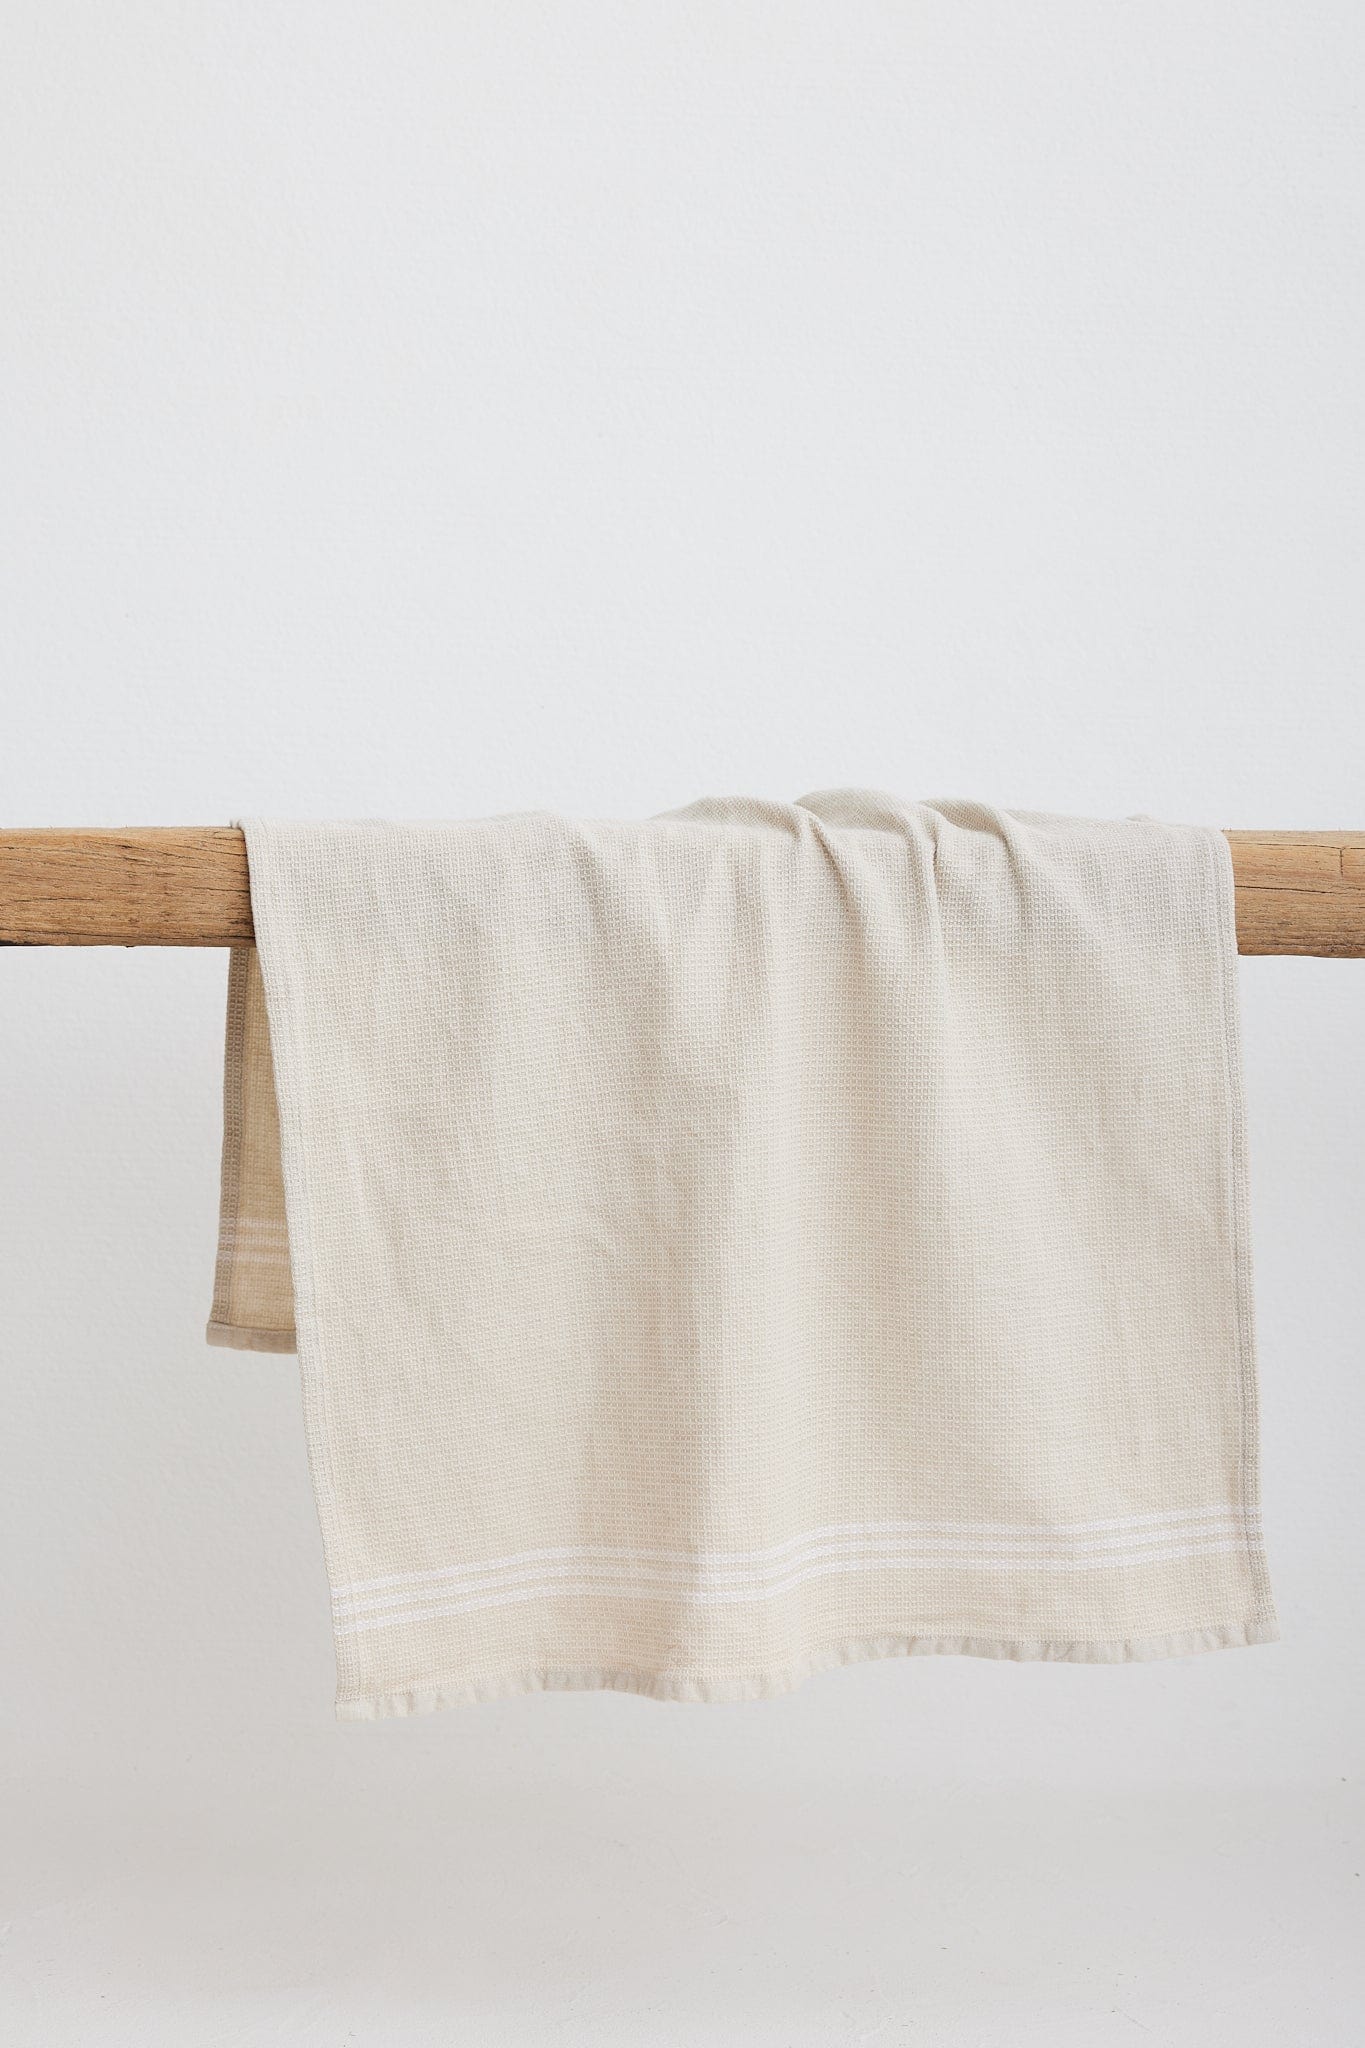 The Dharma Door Organic Cotton Tea Towels Handwoven Tea Towel - Oatmeal w/t White Stripes